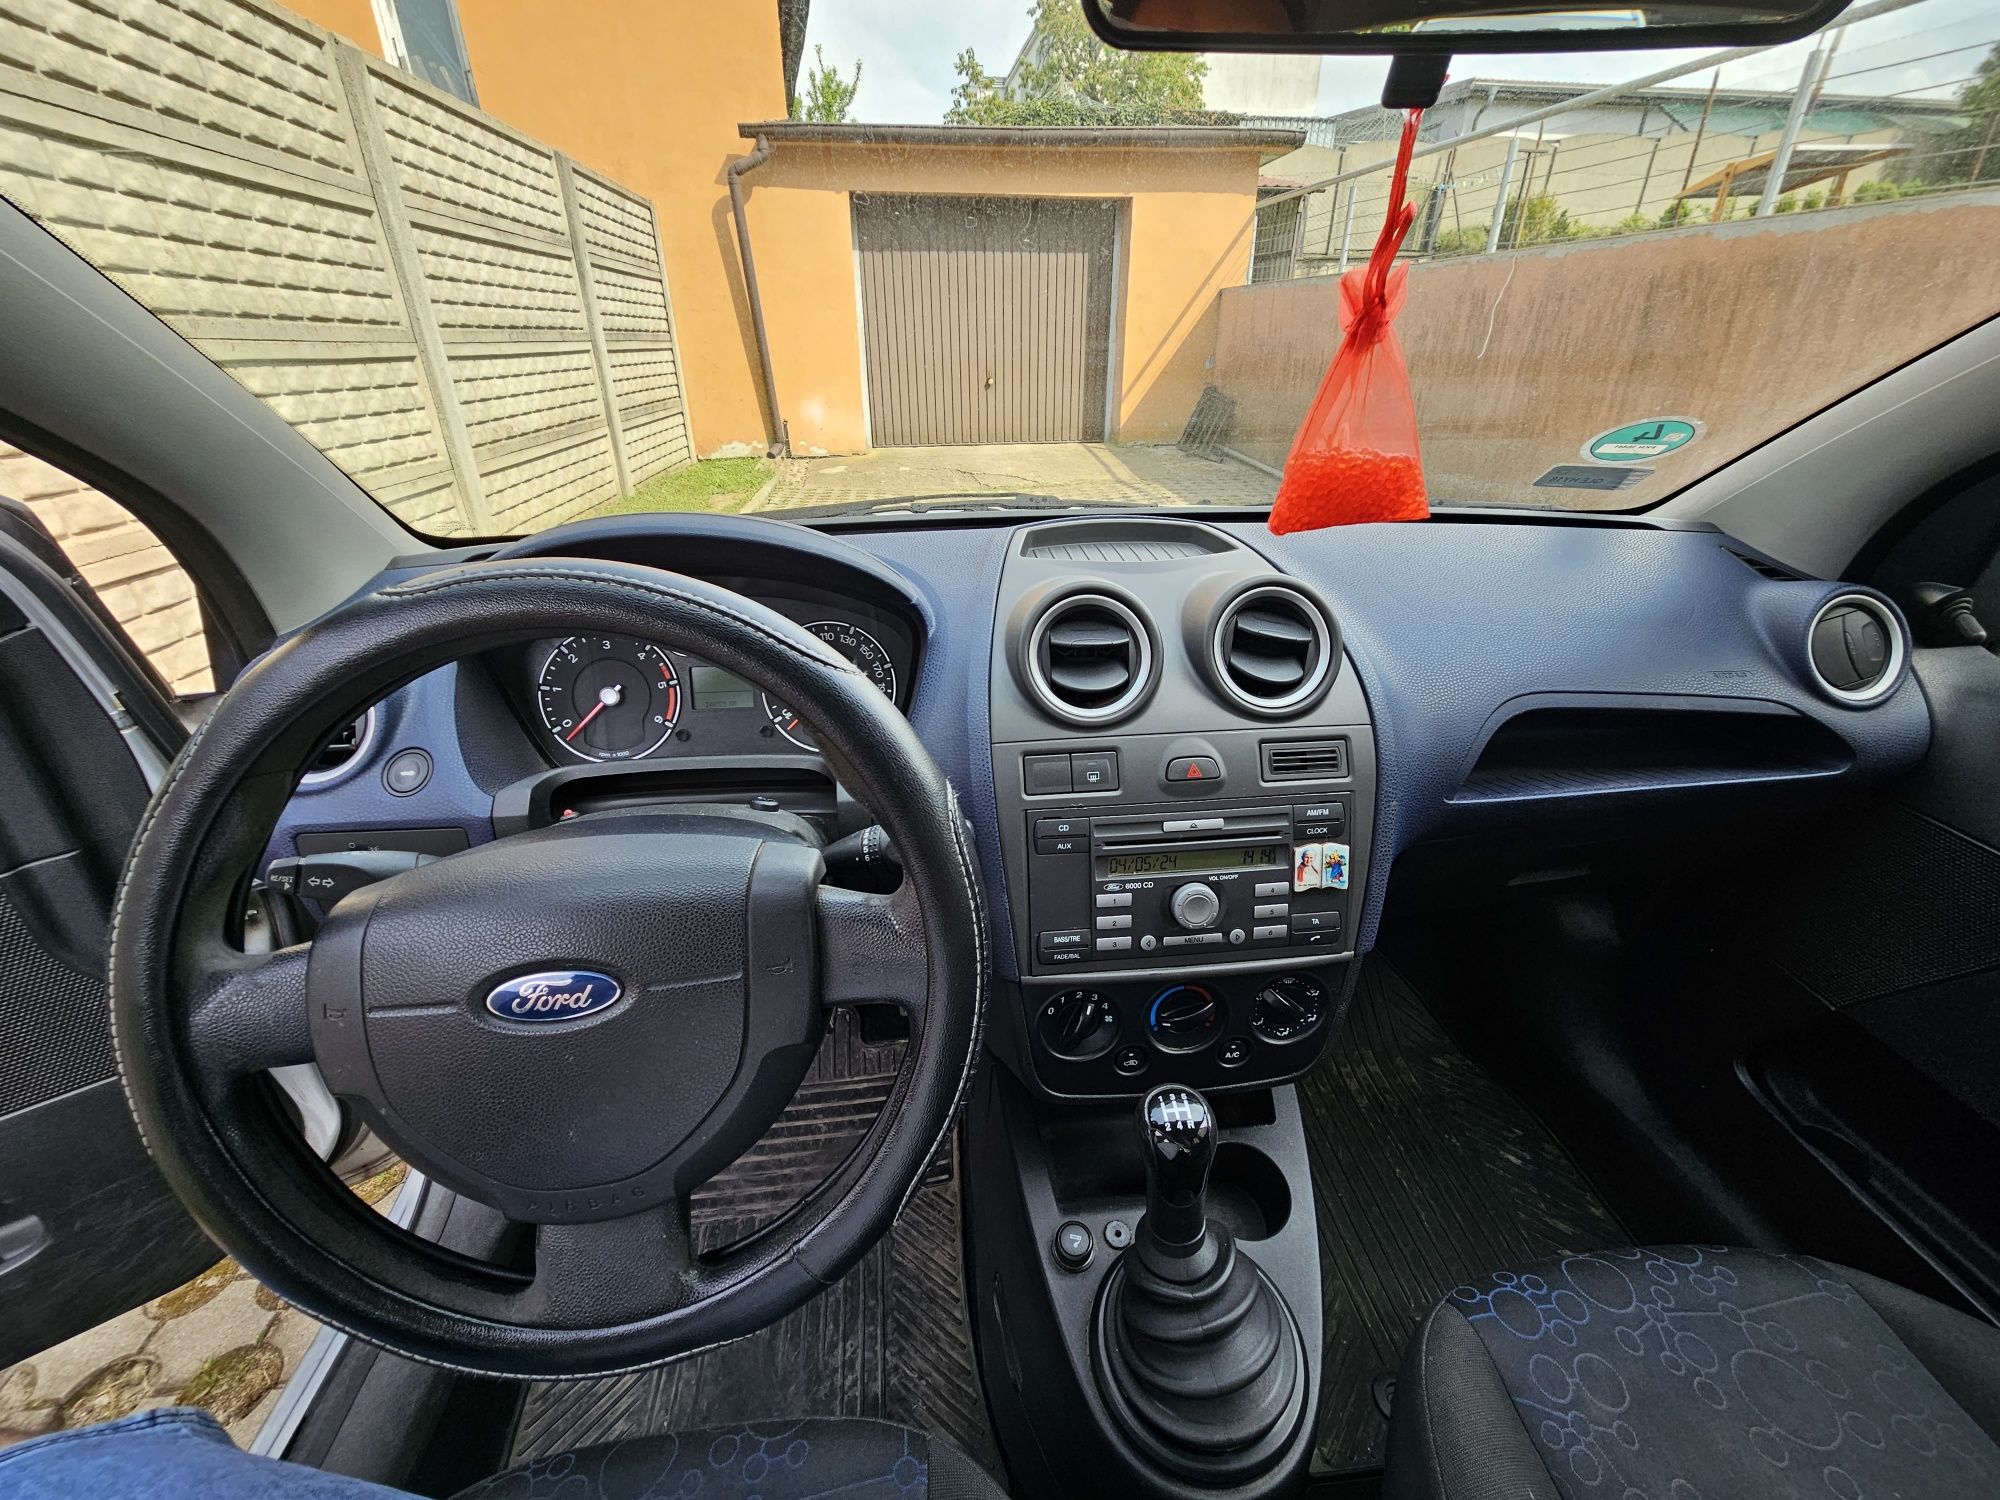 Ford Fiesta 1.4 tdci 2008r.